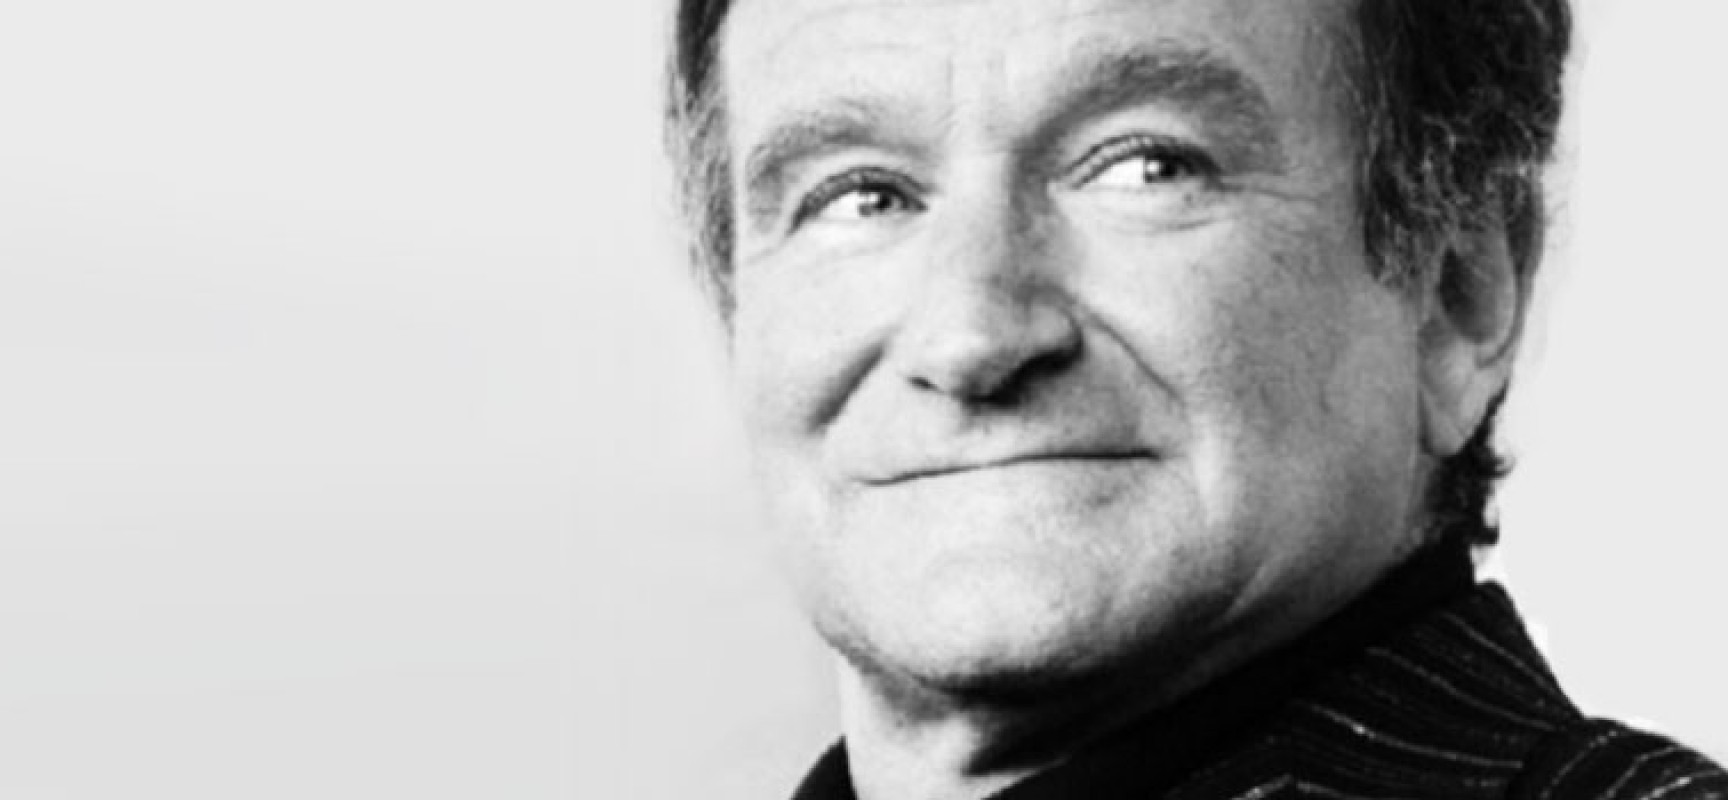 Le trailer du documentaire sur Robin Williams va vous mettre les larmes aux yeux